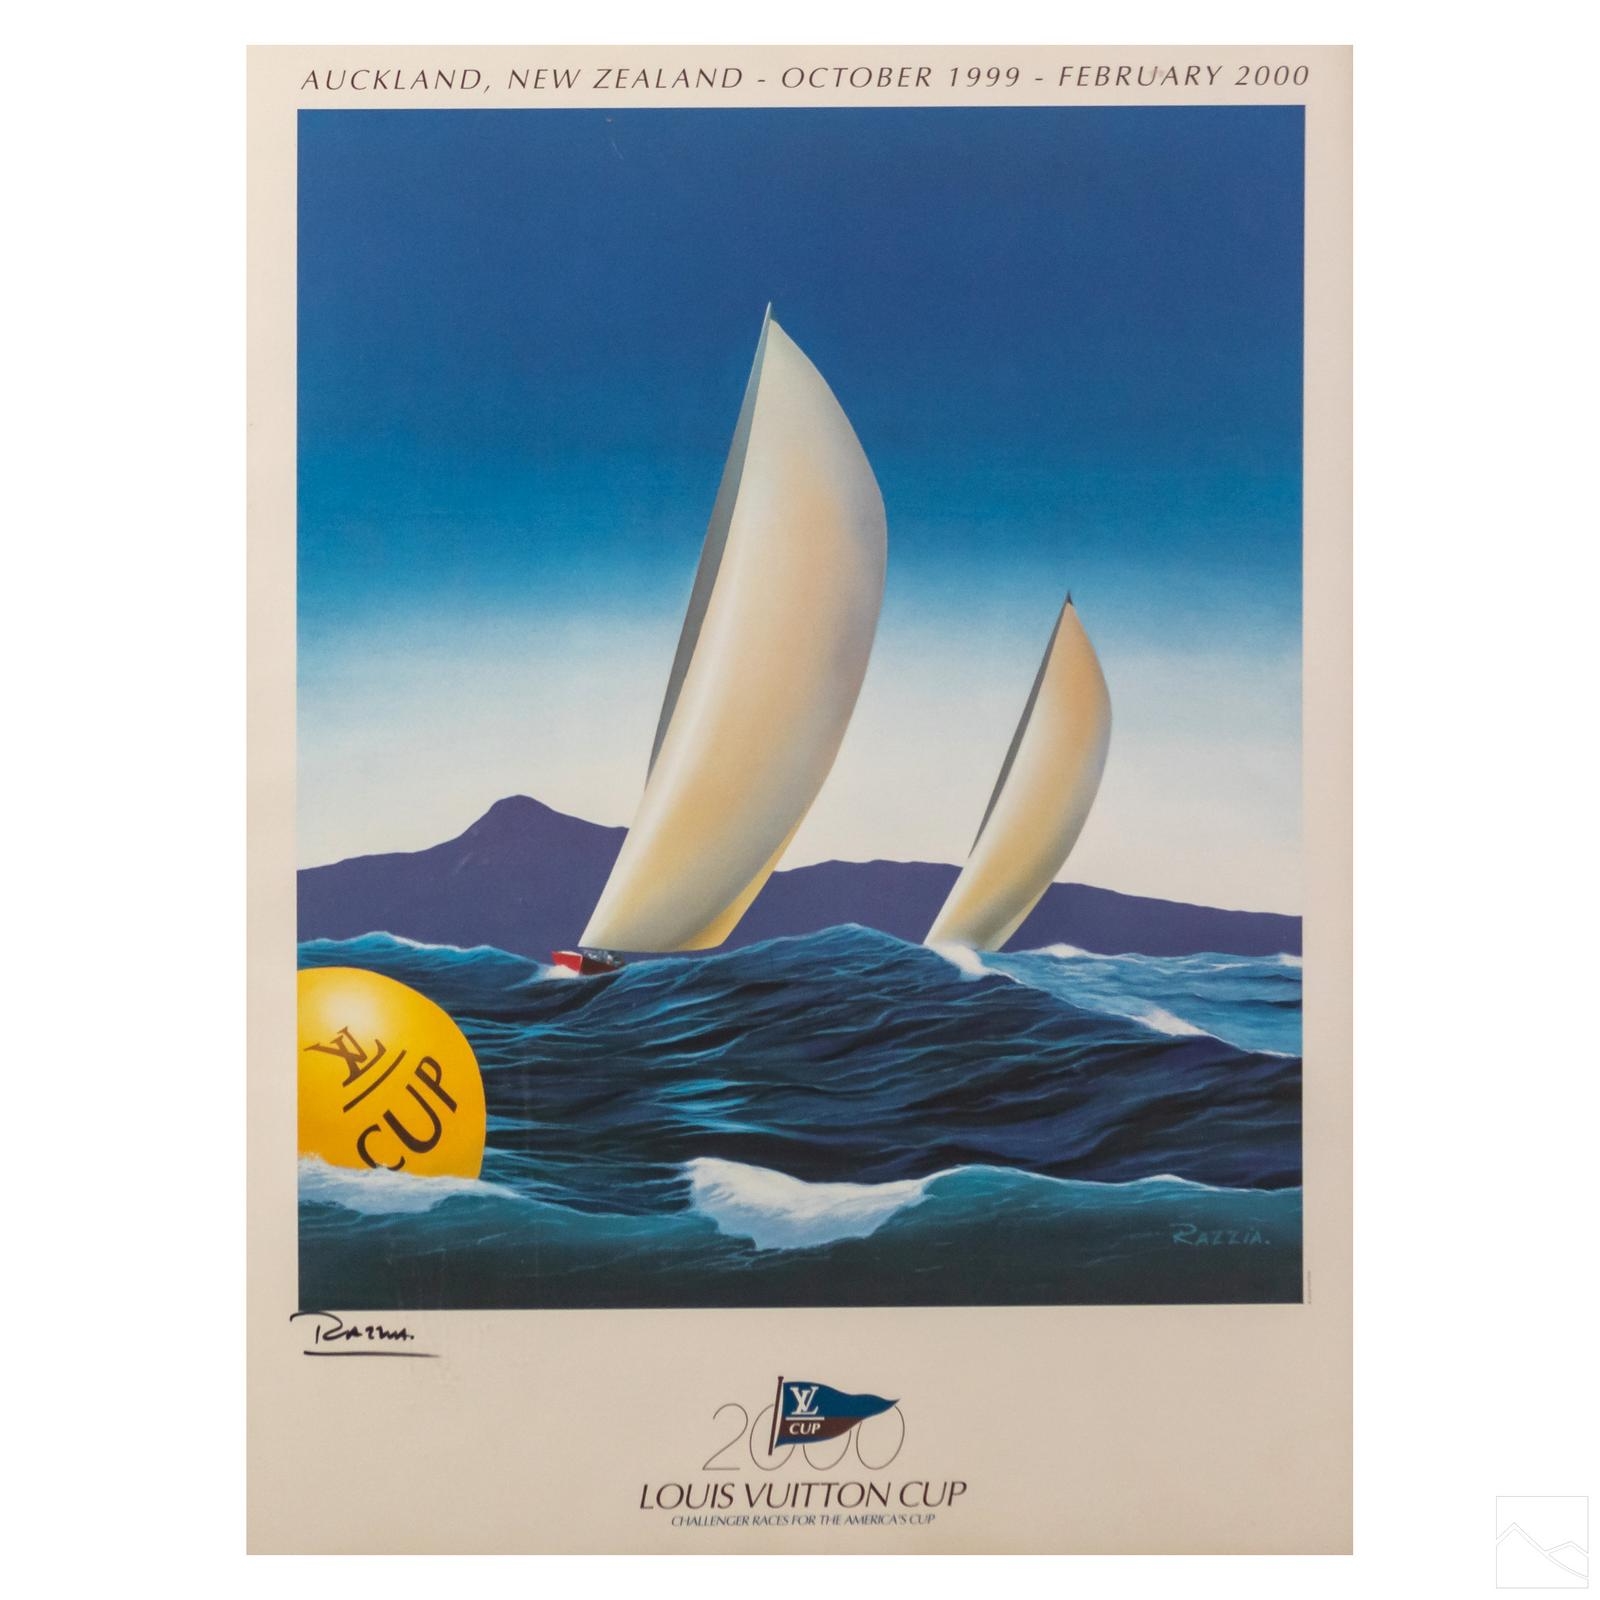 2002 Louis Vuitton Cup 2002 Auckland - Razzia Original Vintage Poster